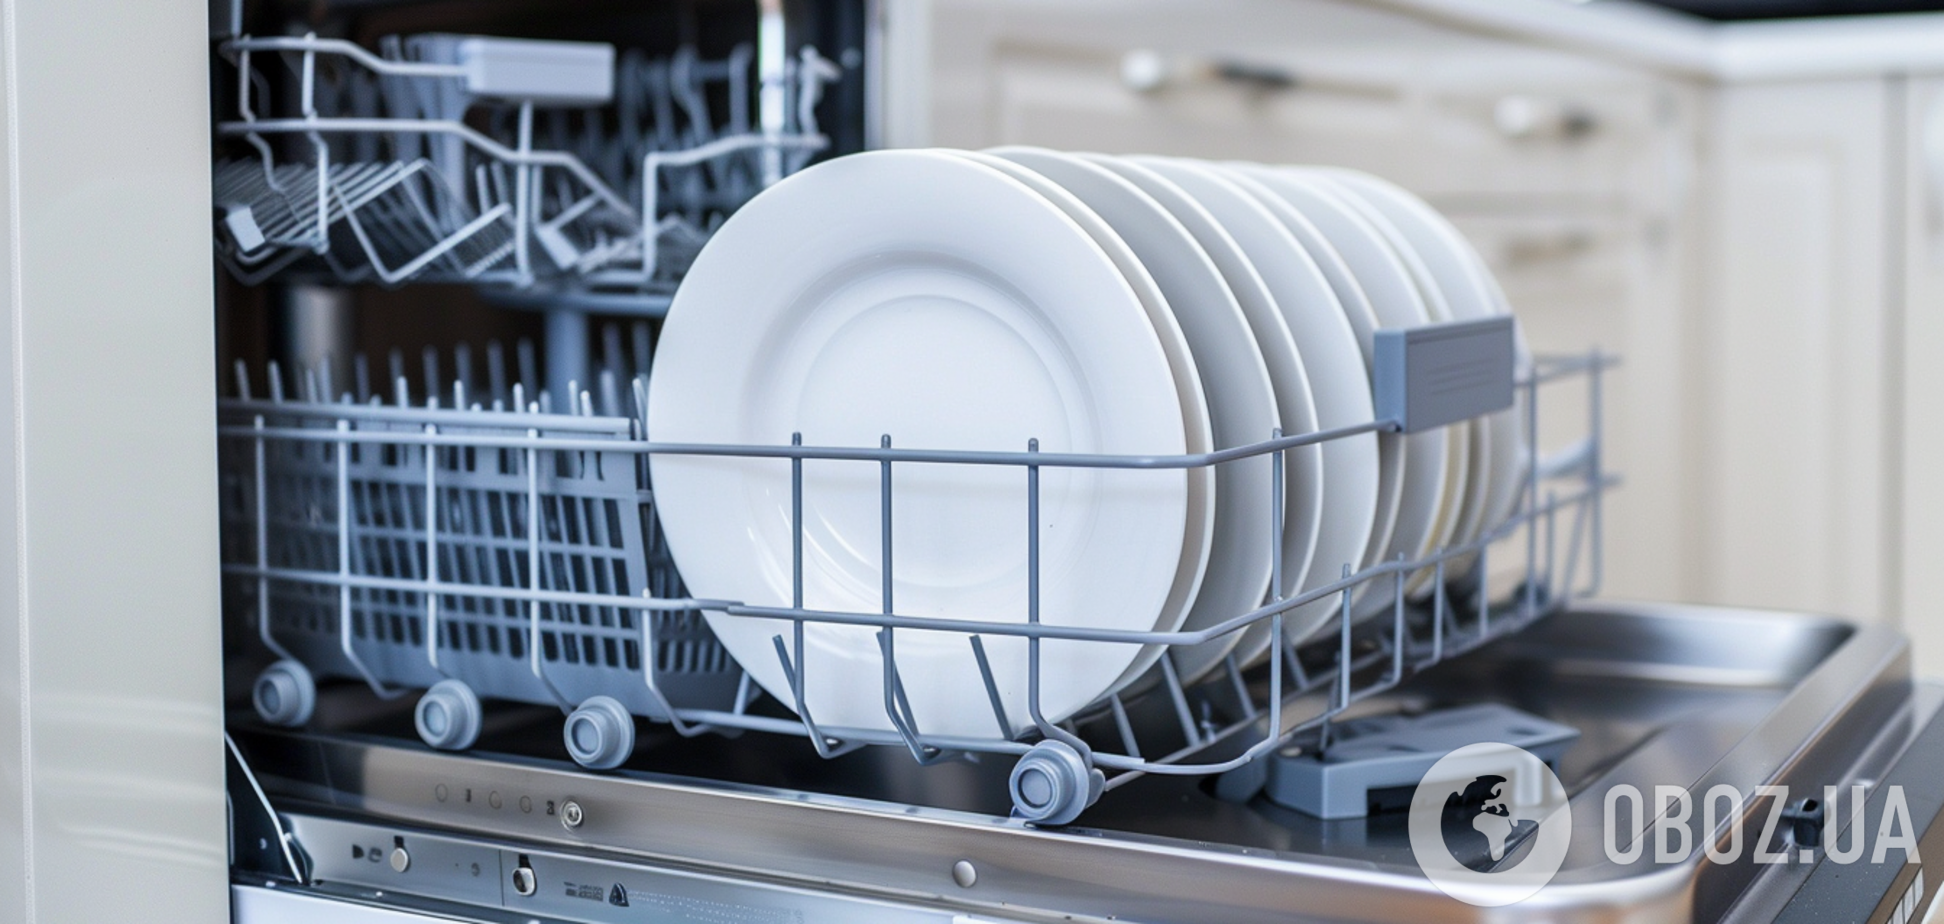 Працюватиме ідеально: як правильно очищувати посудомийну машину